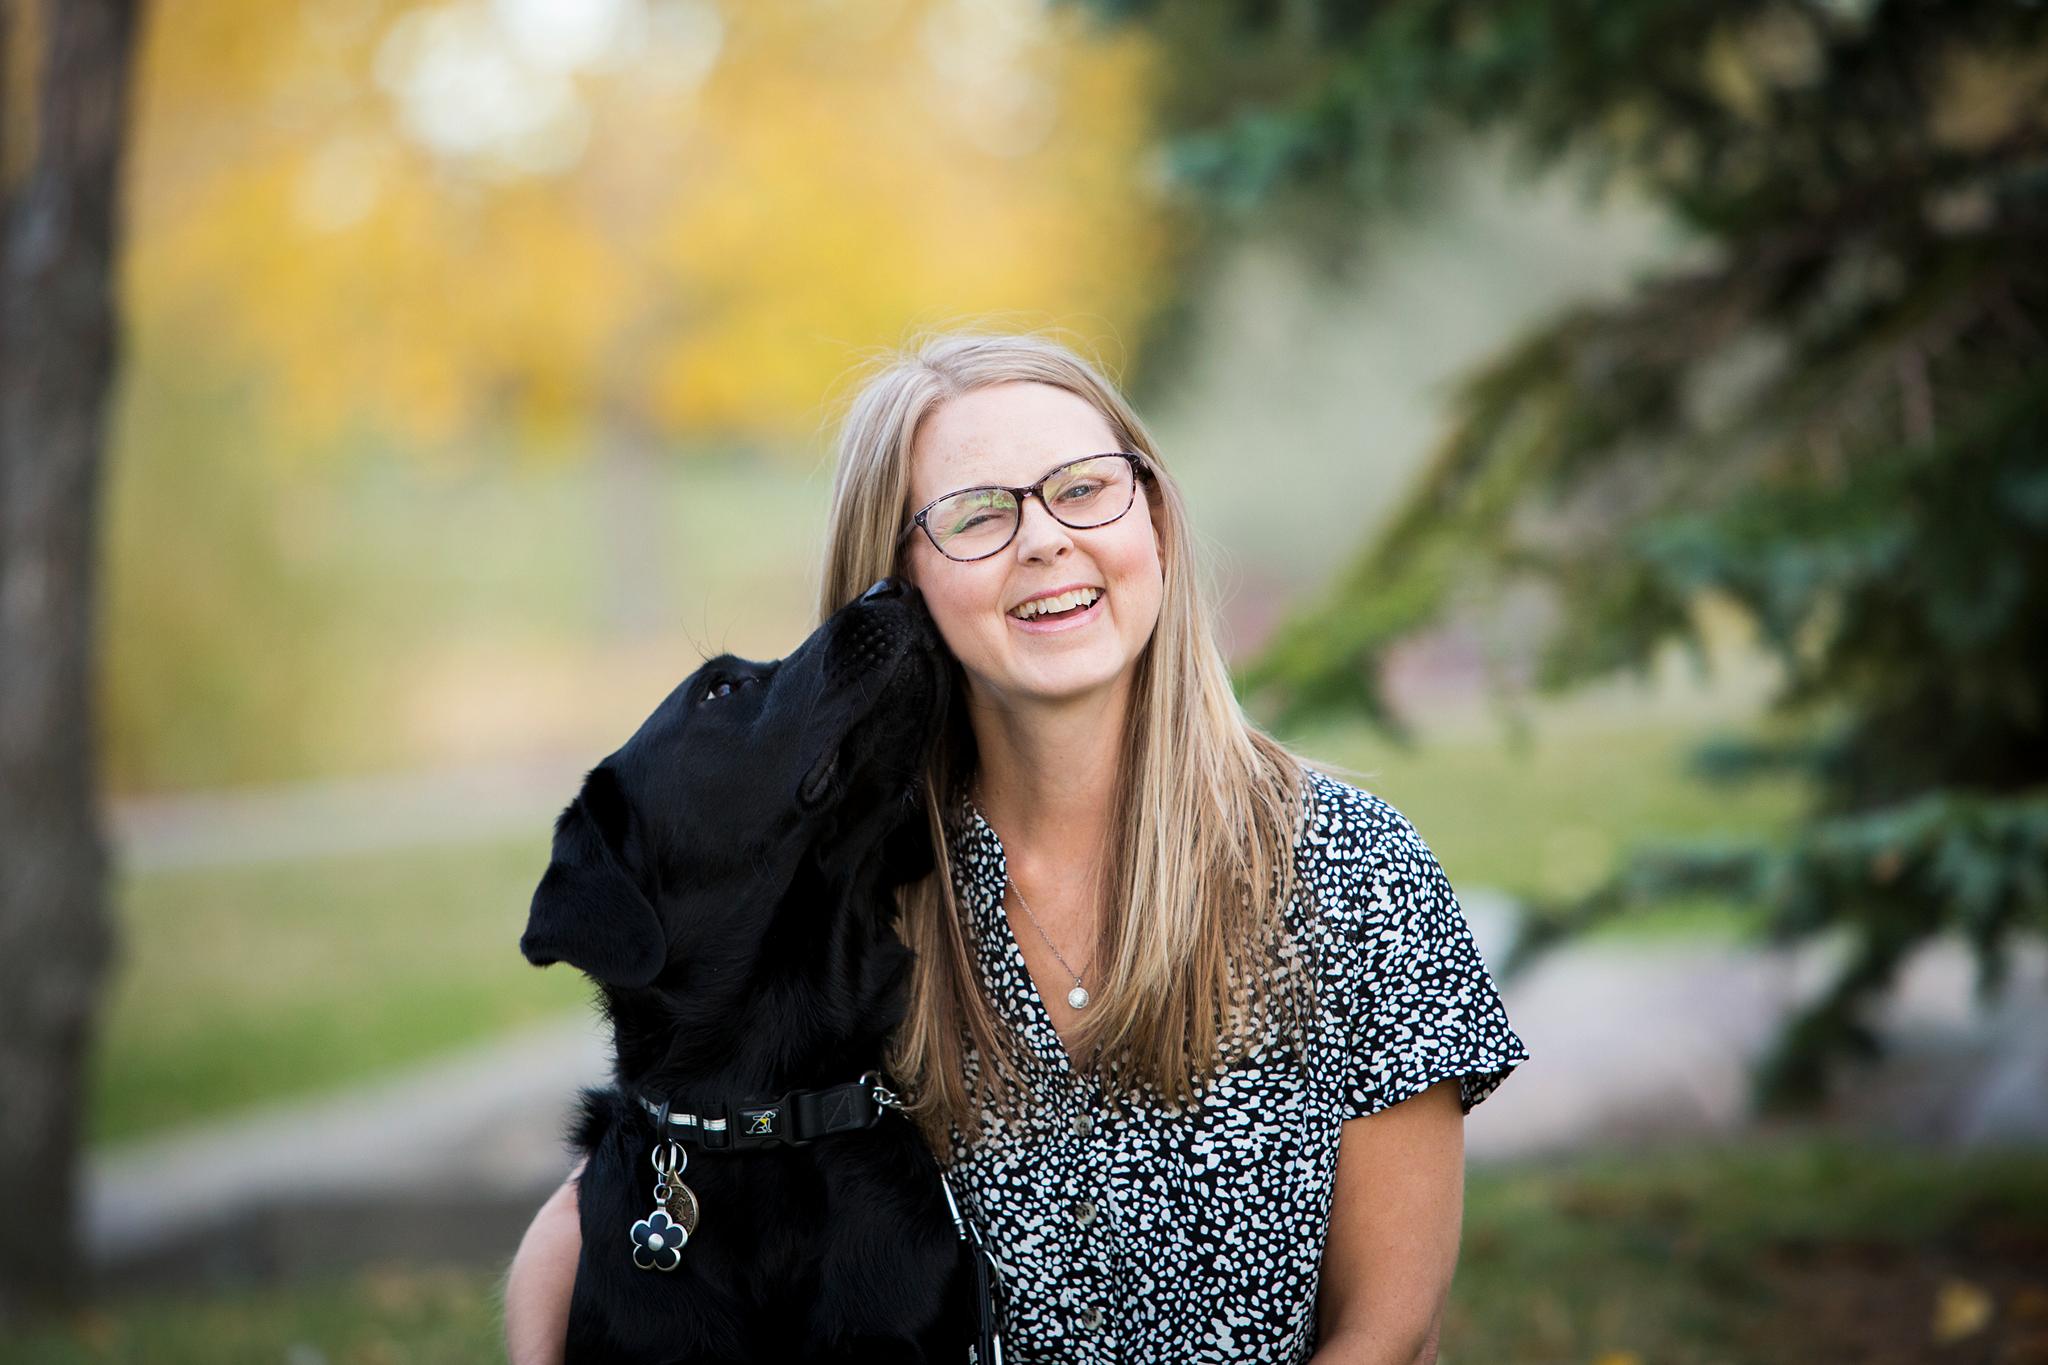 Becki sourit Ã  cÃ´tÃ© de son chien-guide d'INCA, Lulu, qui renifle son oreille.